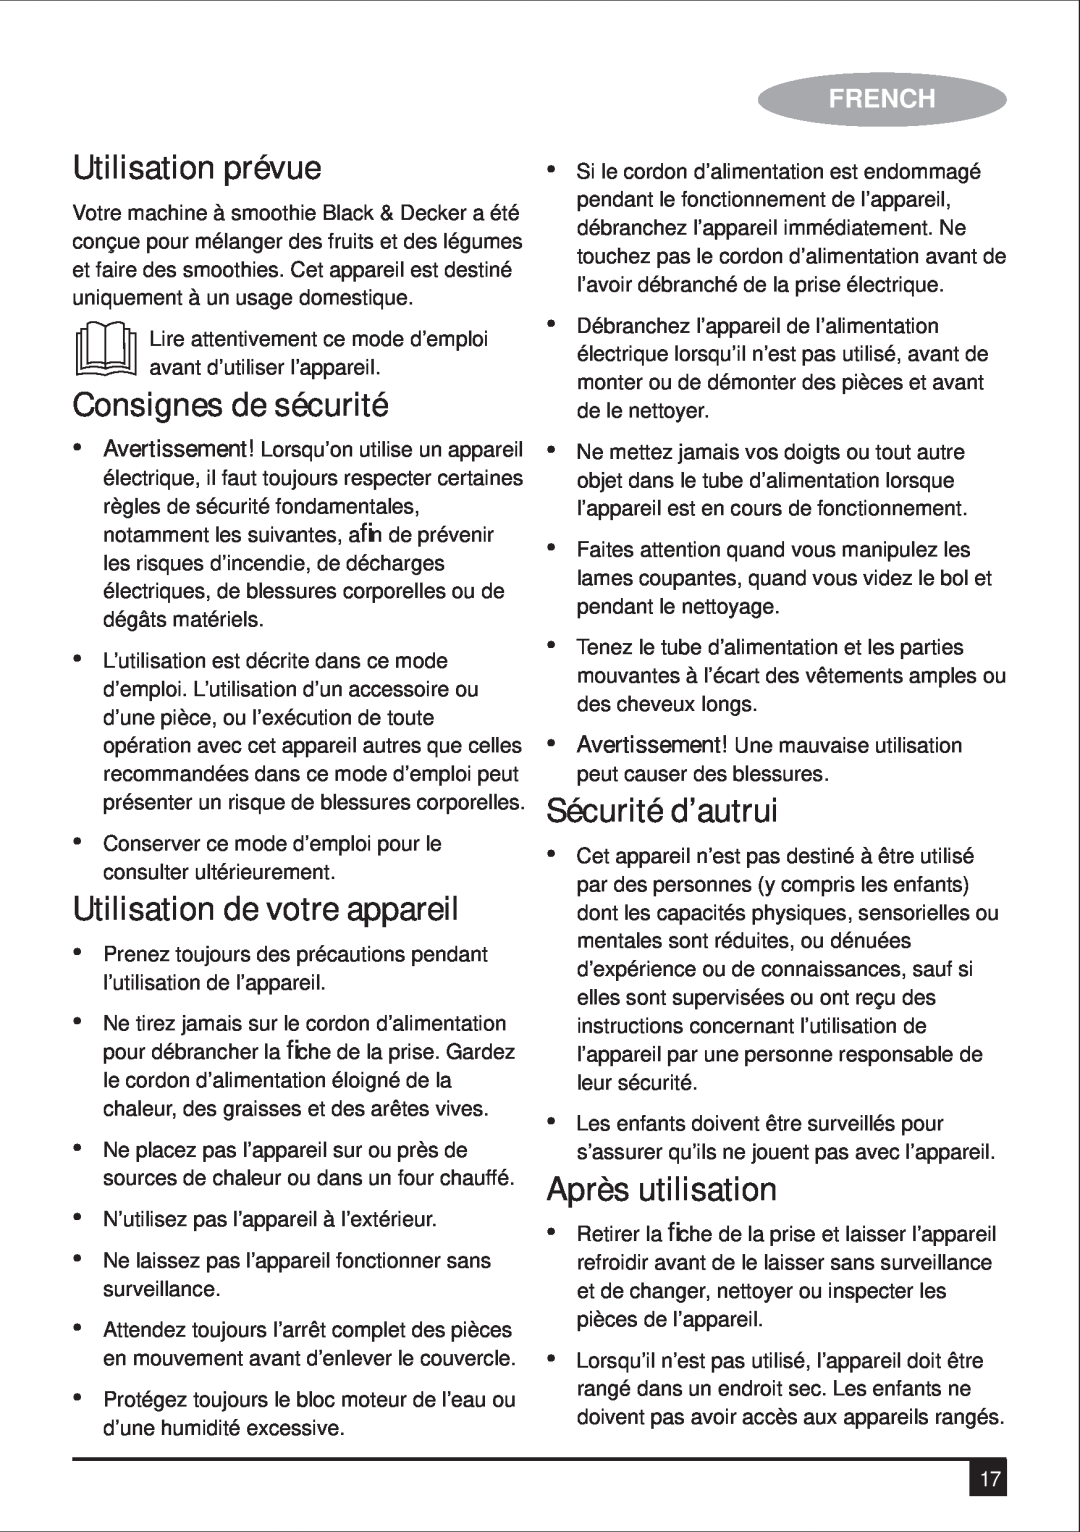 Black & Decker BS600 manual Utilisation prévue, Consignes de sécurité, Sécurité d’autrui, Après utilisation, French 